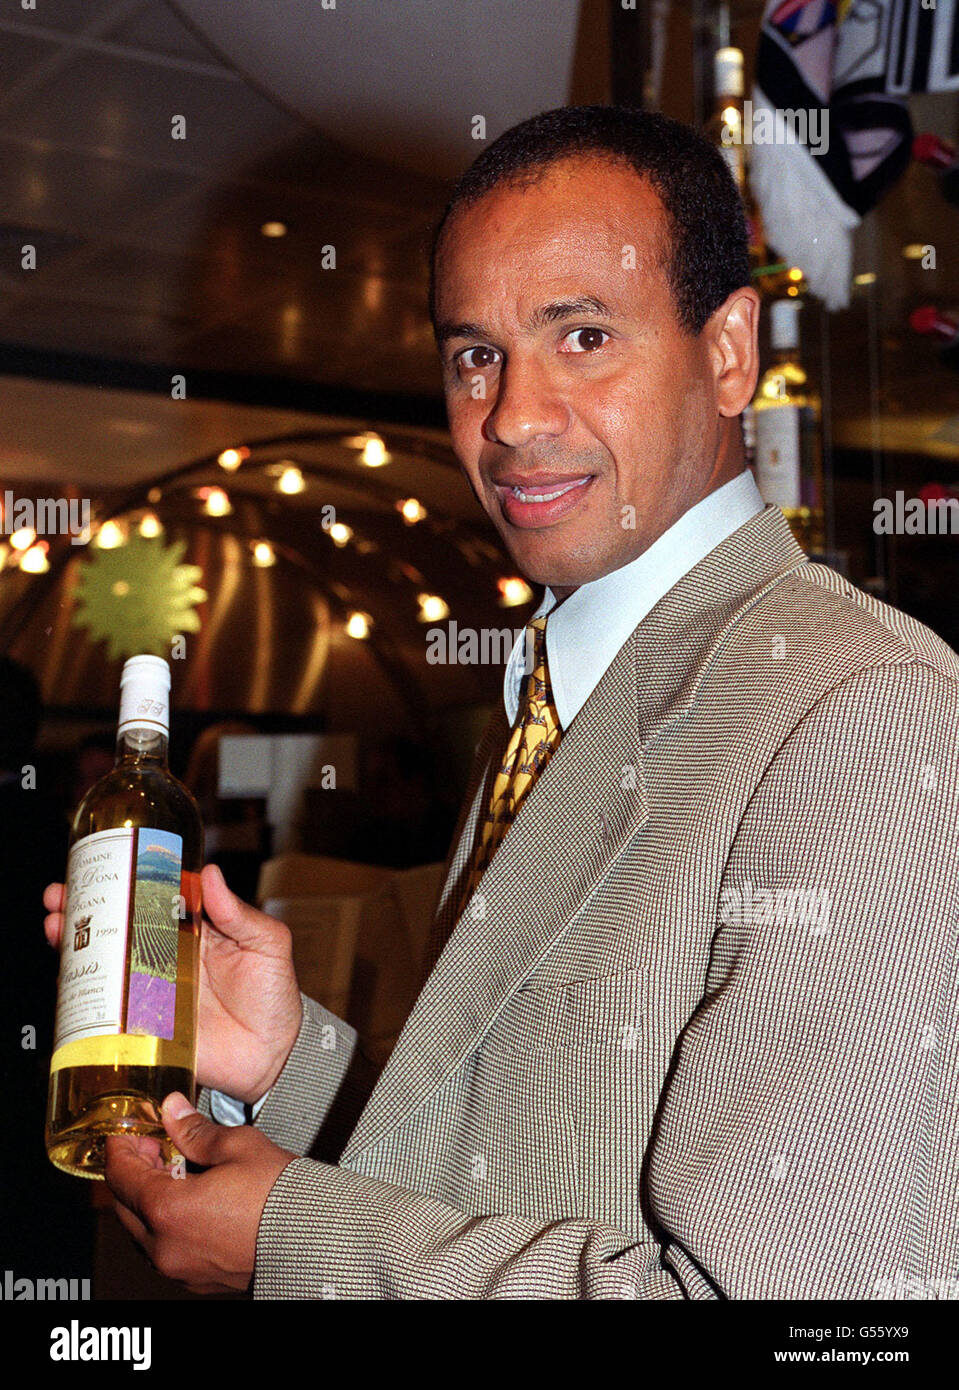 Le directeur du club de football de Fulham, Jean Tigana, lors du lancement  de son nouveau vin blanc sec, le domaine la Dona Tigana, à l'intérieur du  département des vins de Harrods